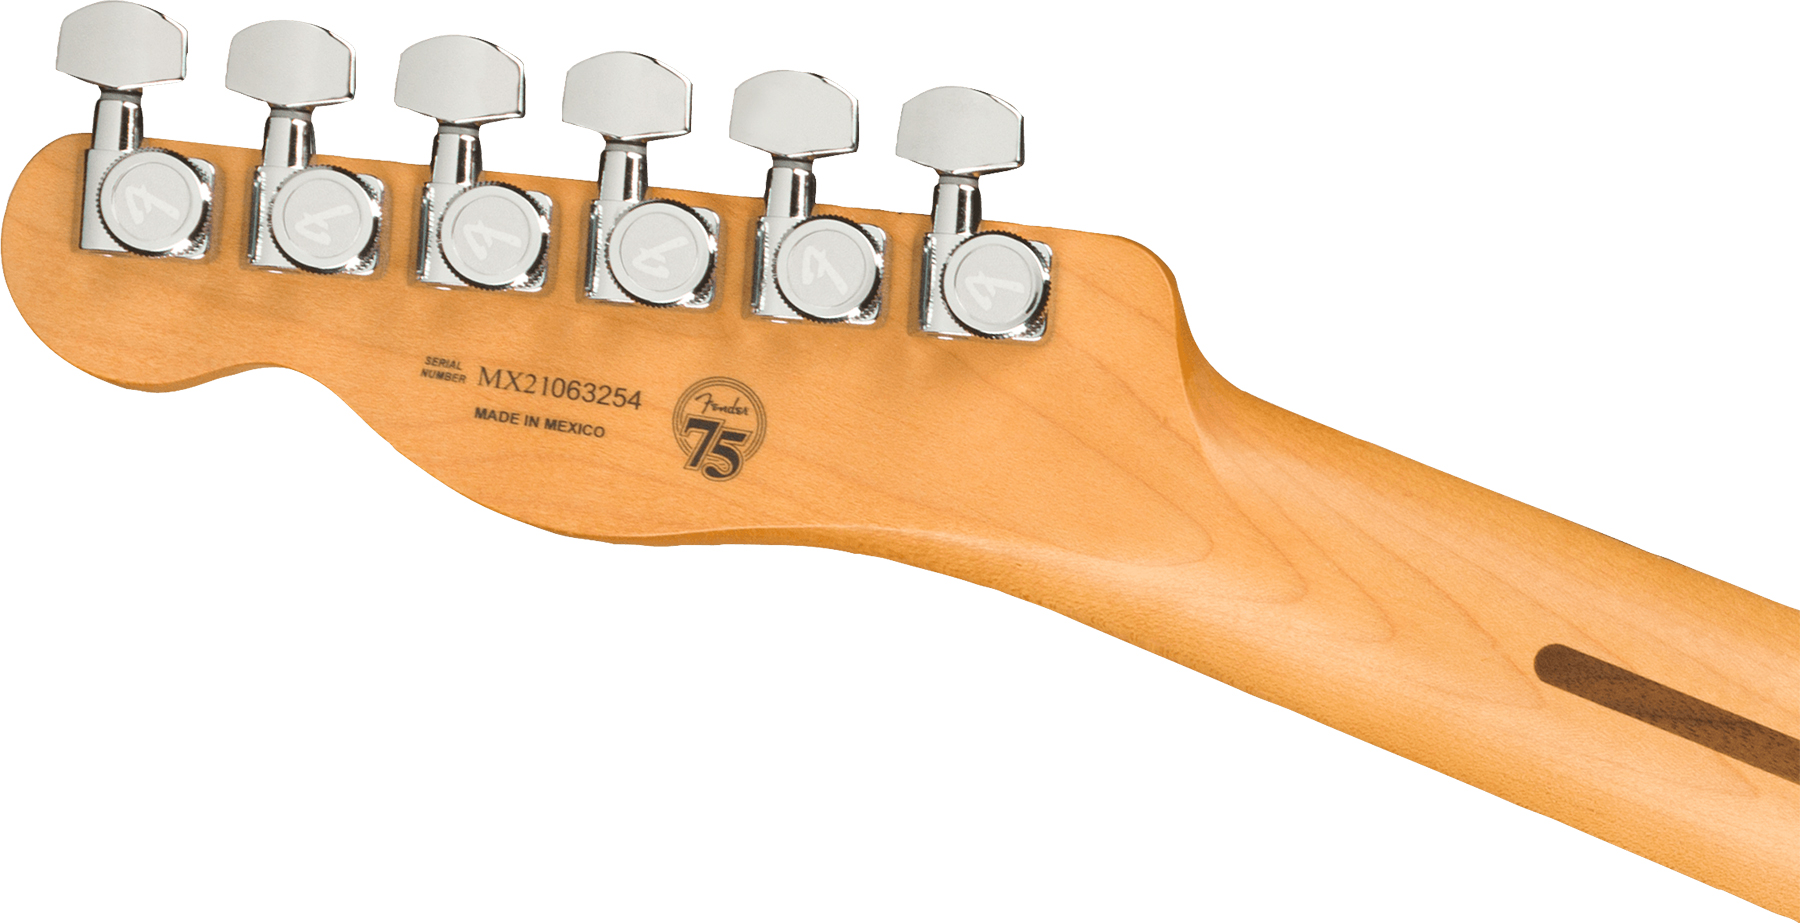 Fender Tele Player Plus Nashville Mex 3s Ht Pf - Opal Spark - Guitarra eléctrica con forma de tel - Variation 3